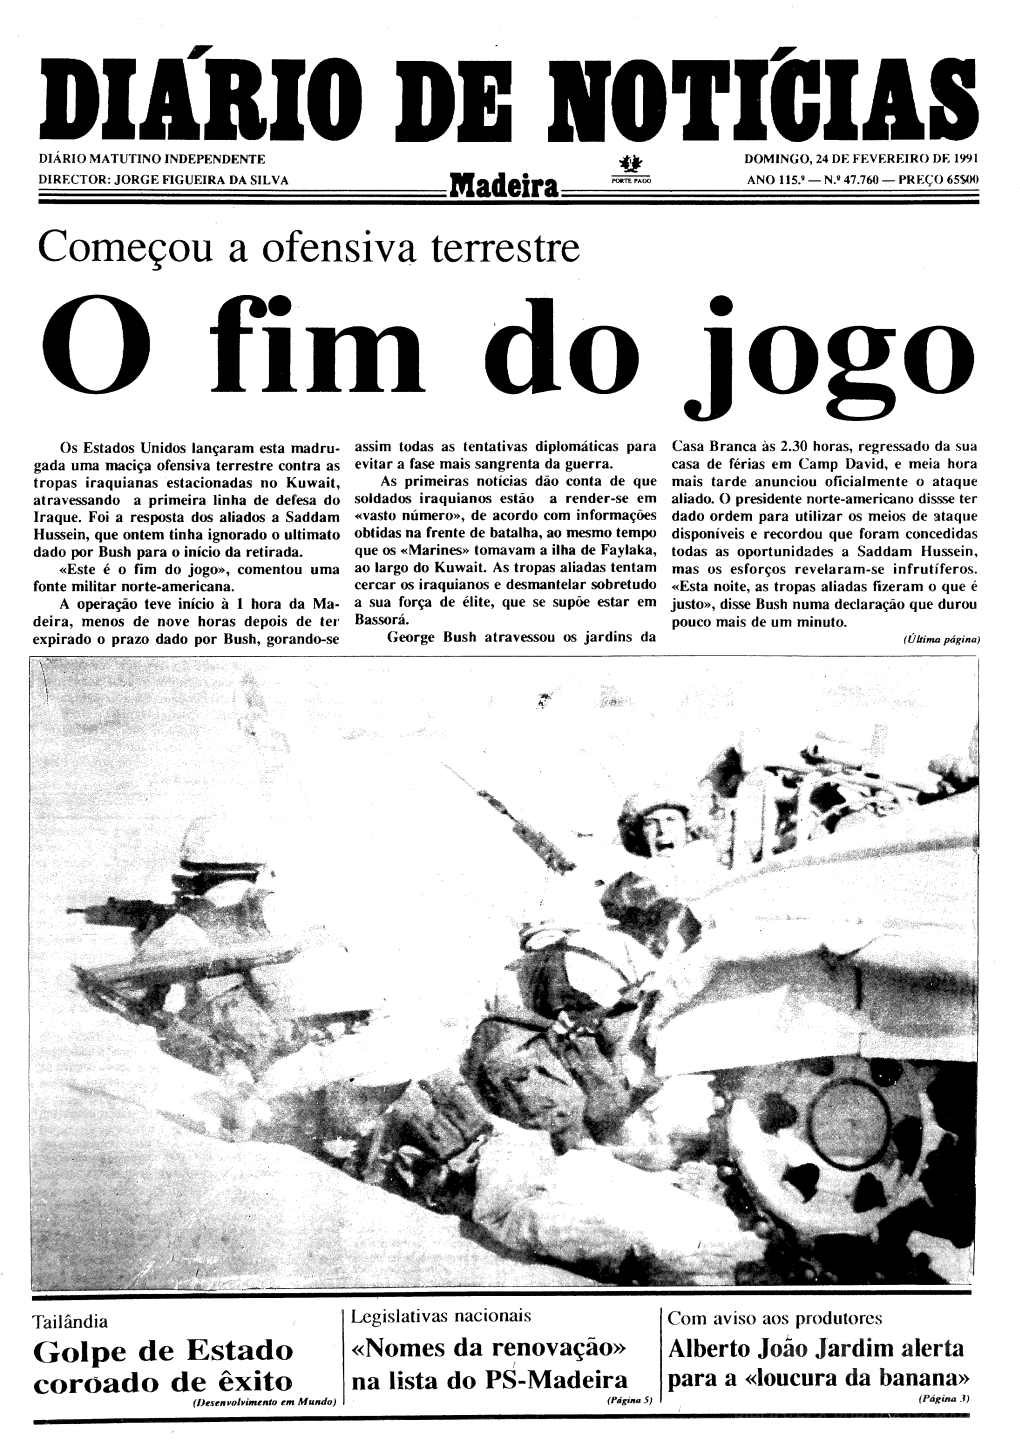 Pdf Documents/Diario.24.02.1991.Pdf